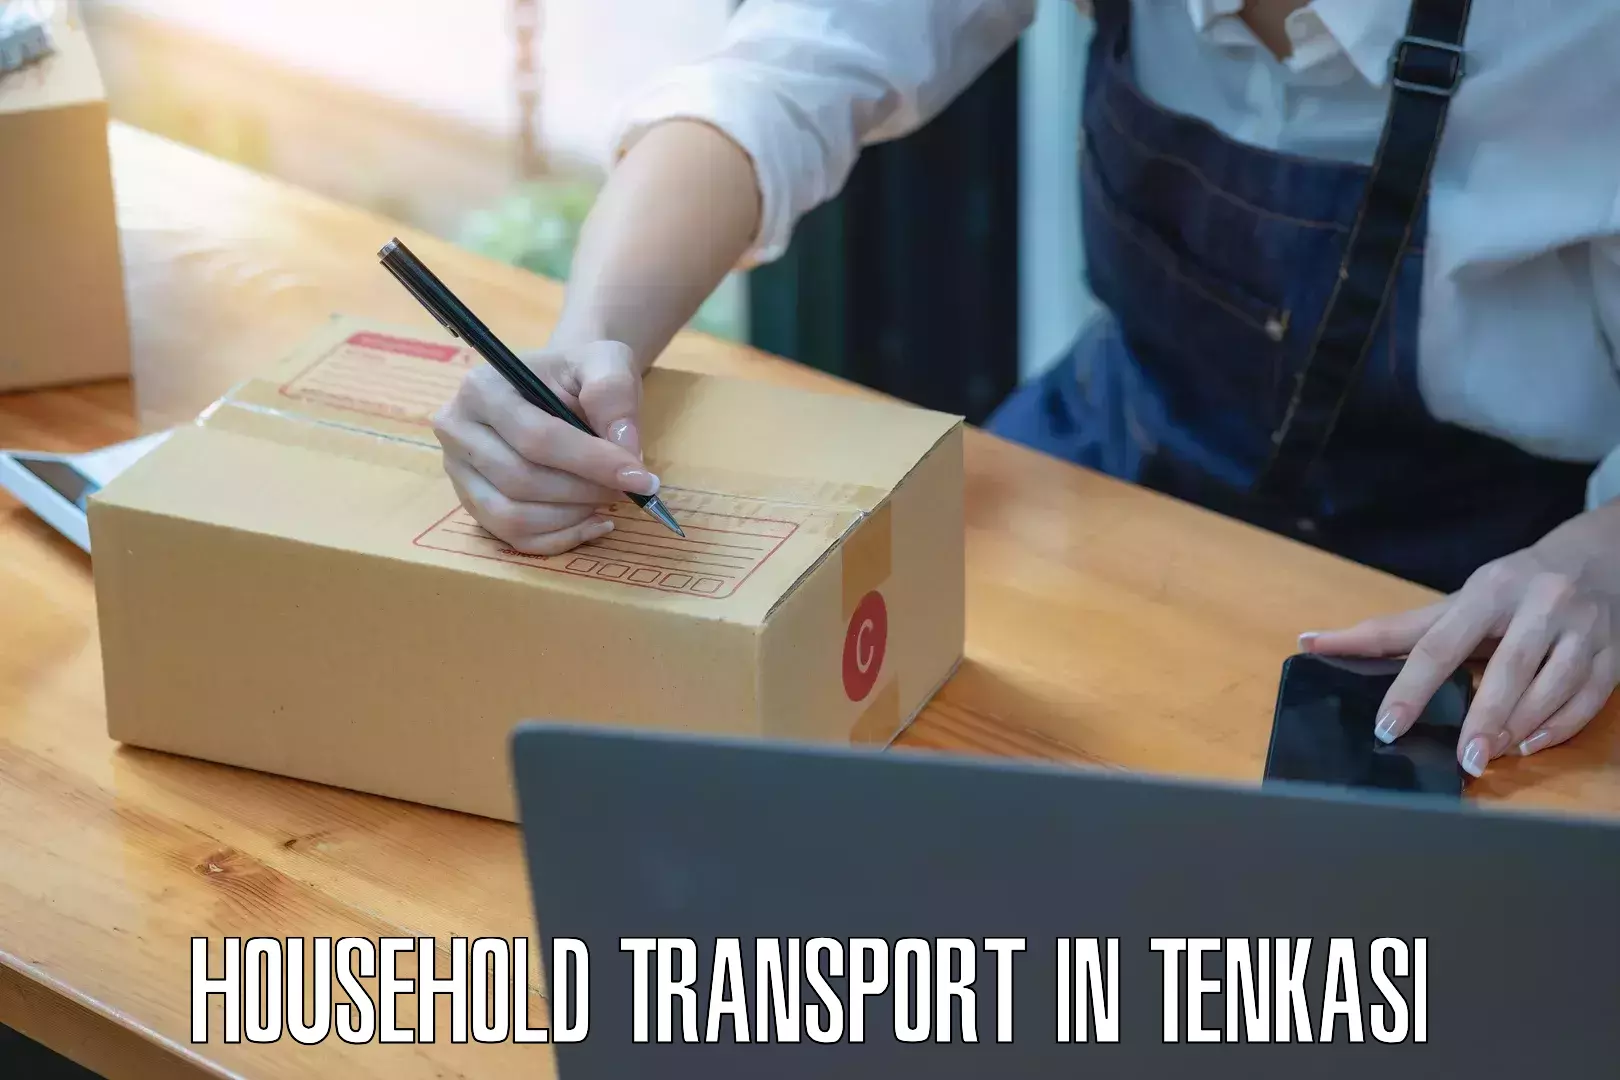 Residential furniture transport in Tenkasi